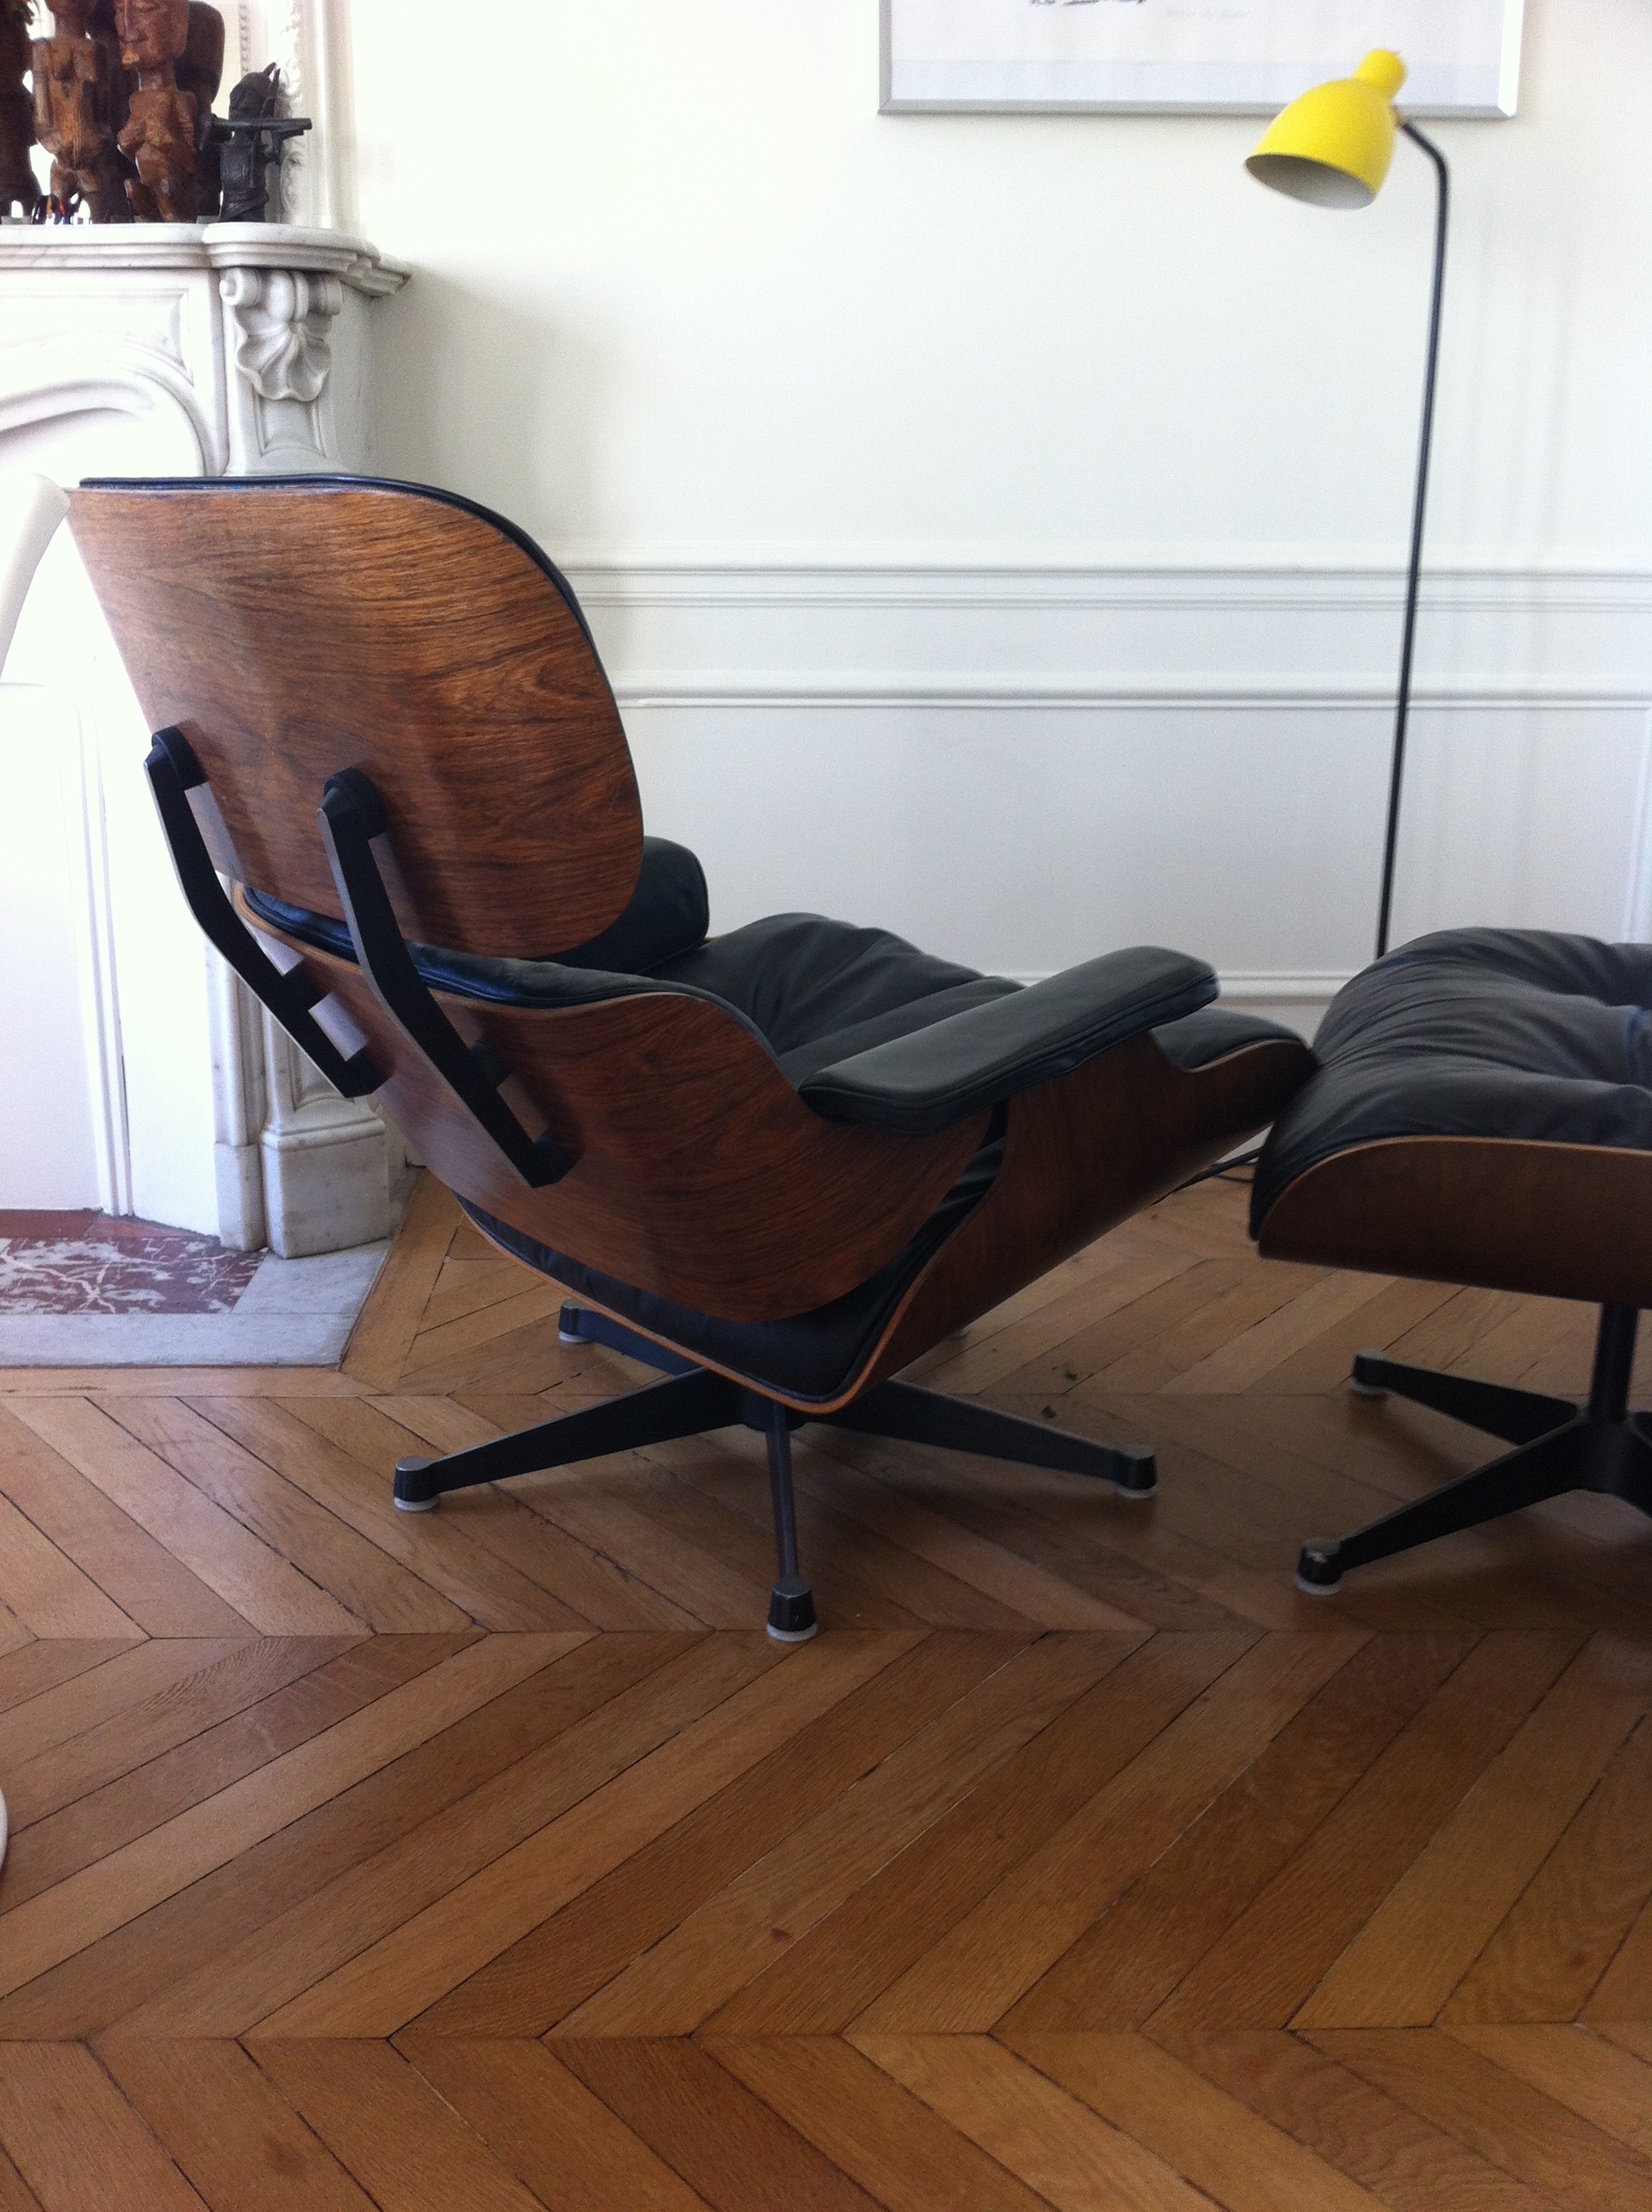 Fauteuil lounge chair Eames édition Herman Miller - L'Atelier 50 - Boutique vintage - achat et vente mobilier vintage accessoires